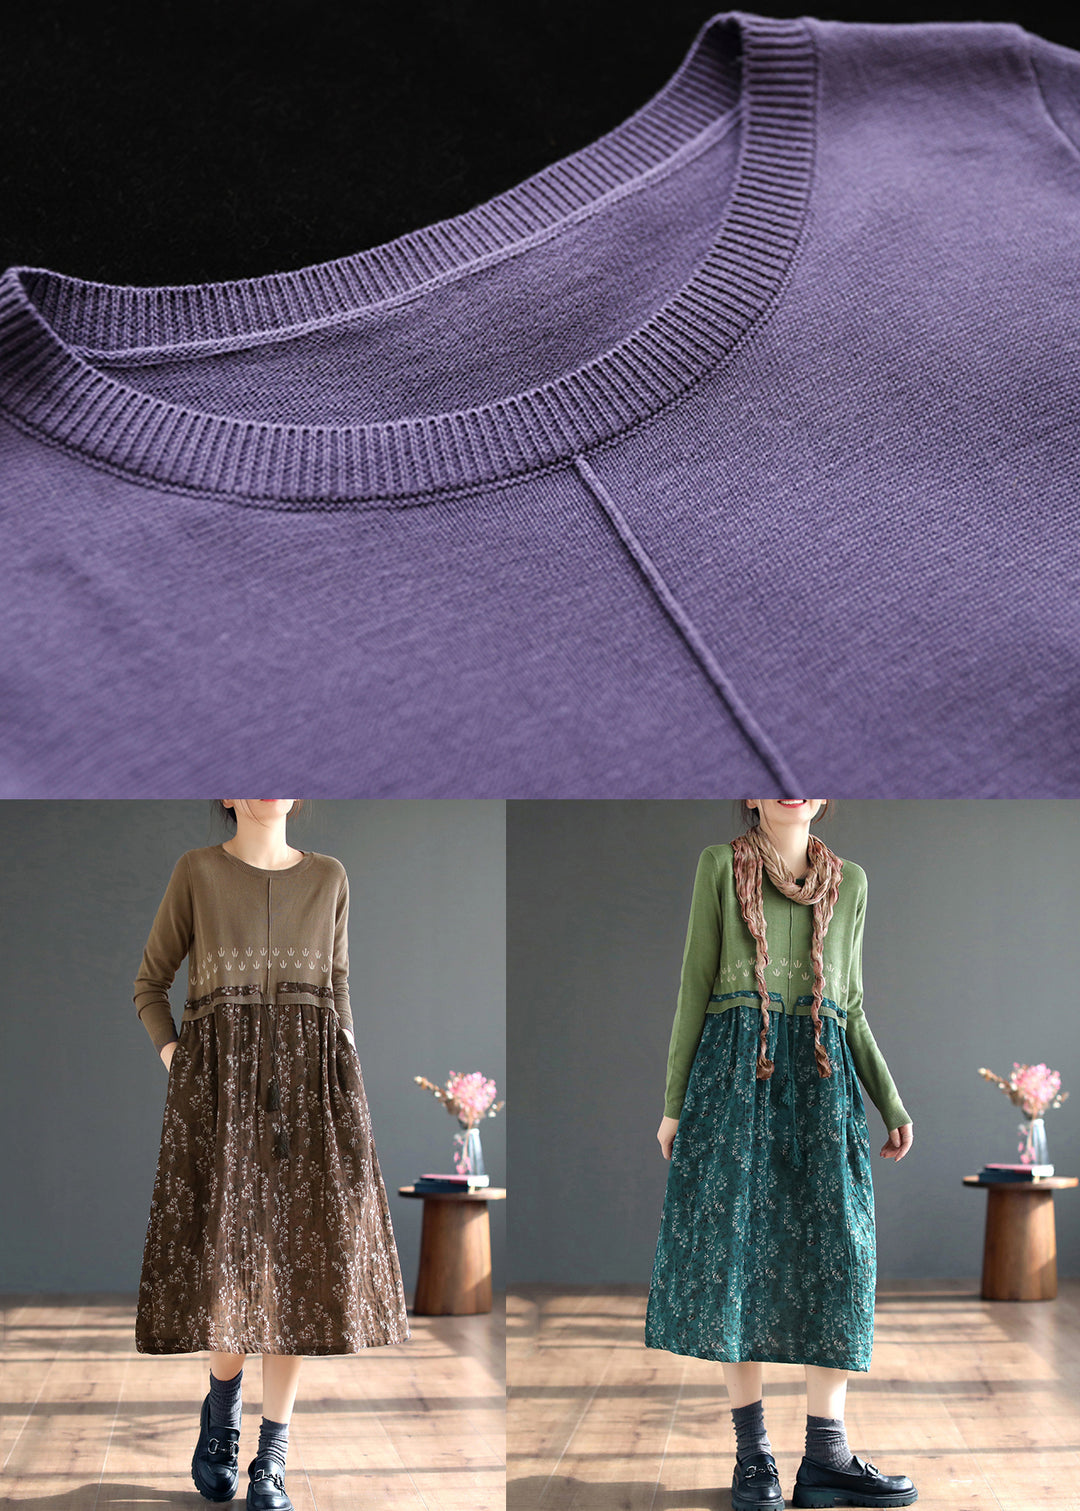 Art Purple Print Lace Up Patchwork Knitting Long Dress Fall